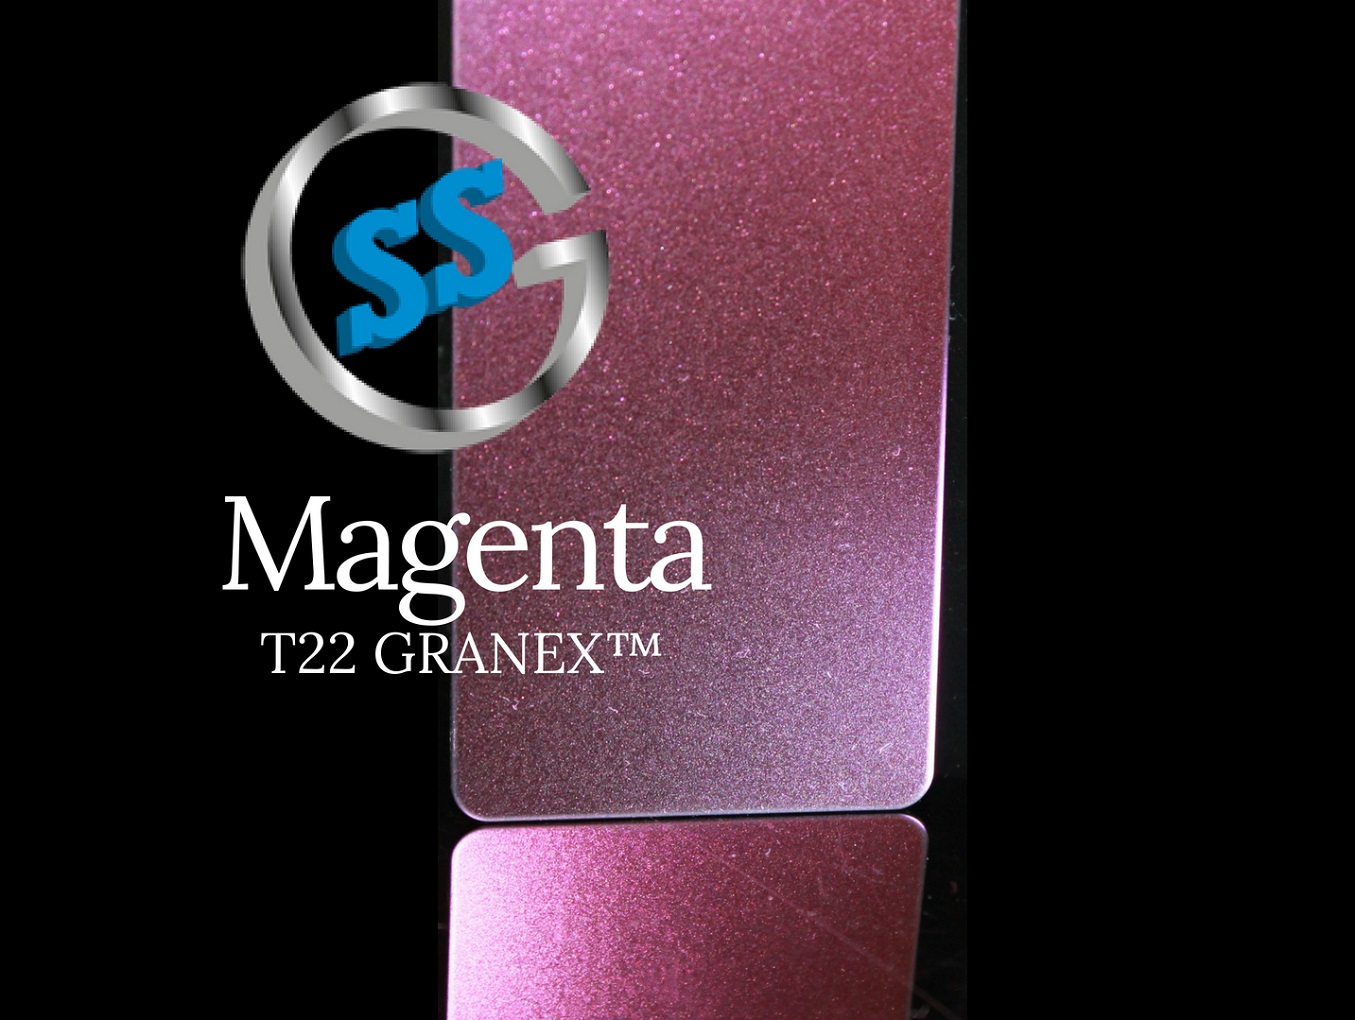 Inox colorato T22 Titanium Magenta Granex, inox micro pallinato colorato T22 magenta